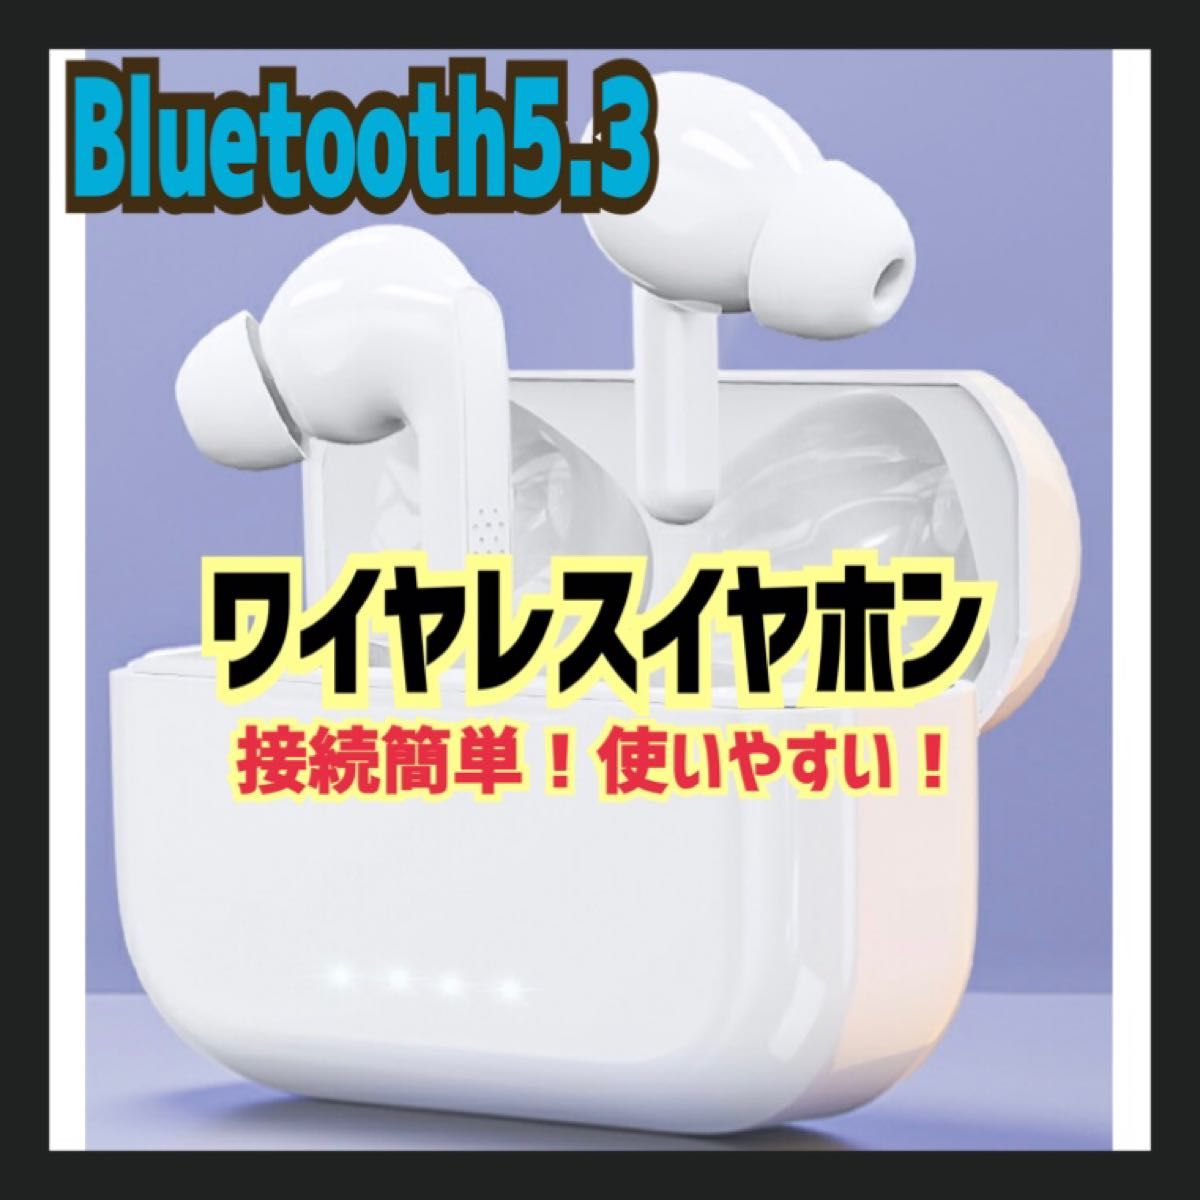 最新 イヤホン Bluetooth5.3+EDR搭載 自動ペアリング ワイヤレスイヤホン Bluetooth